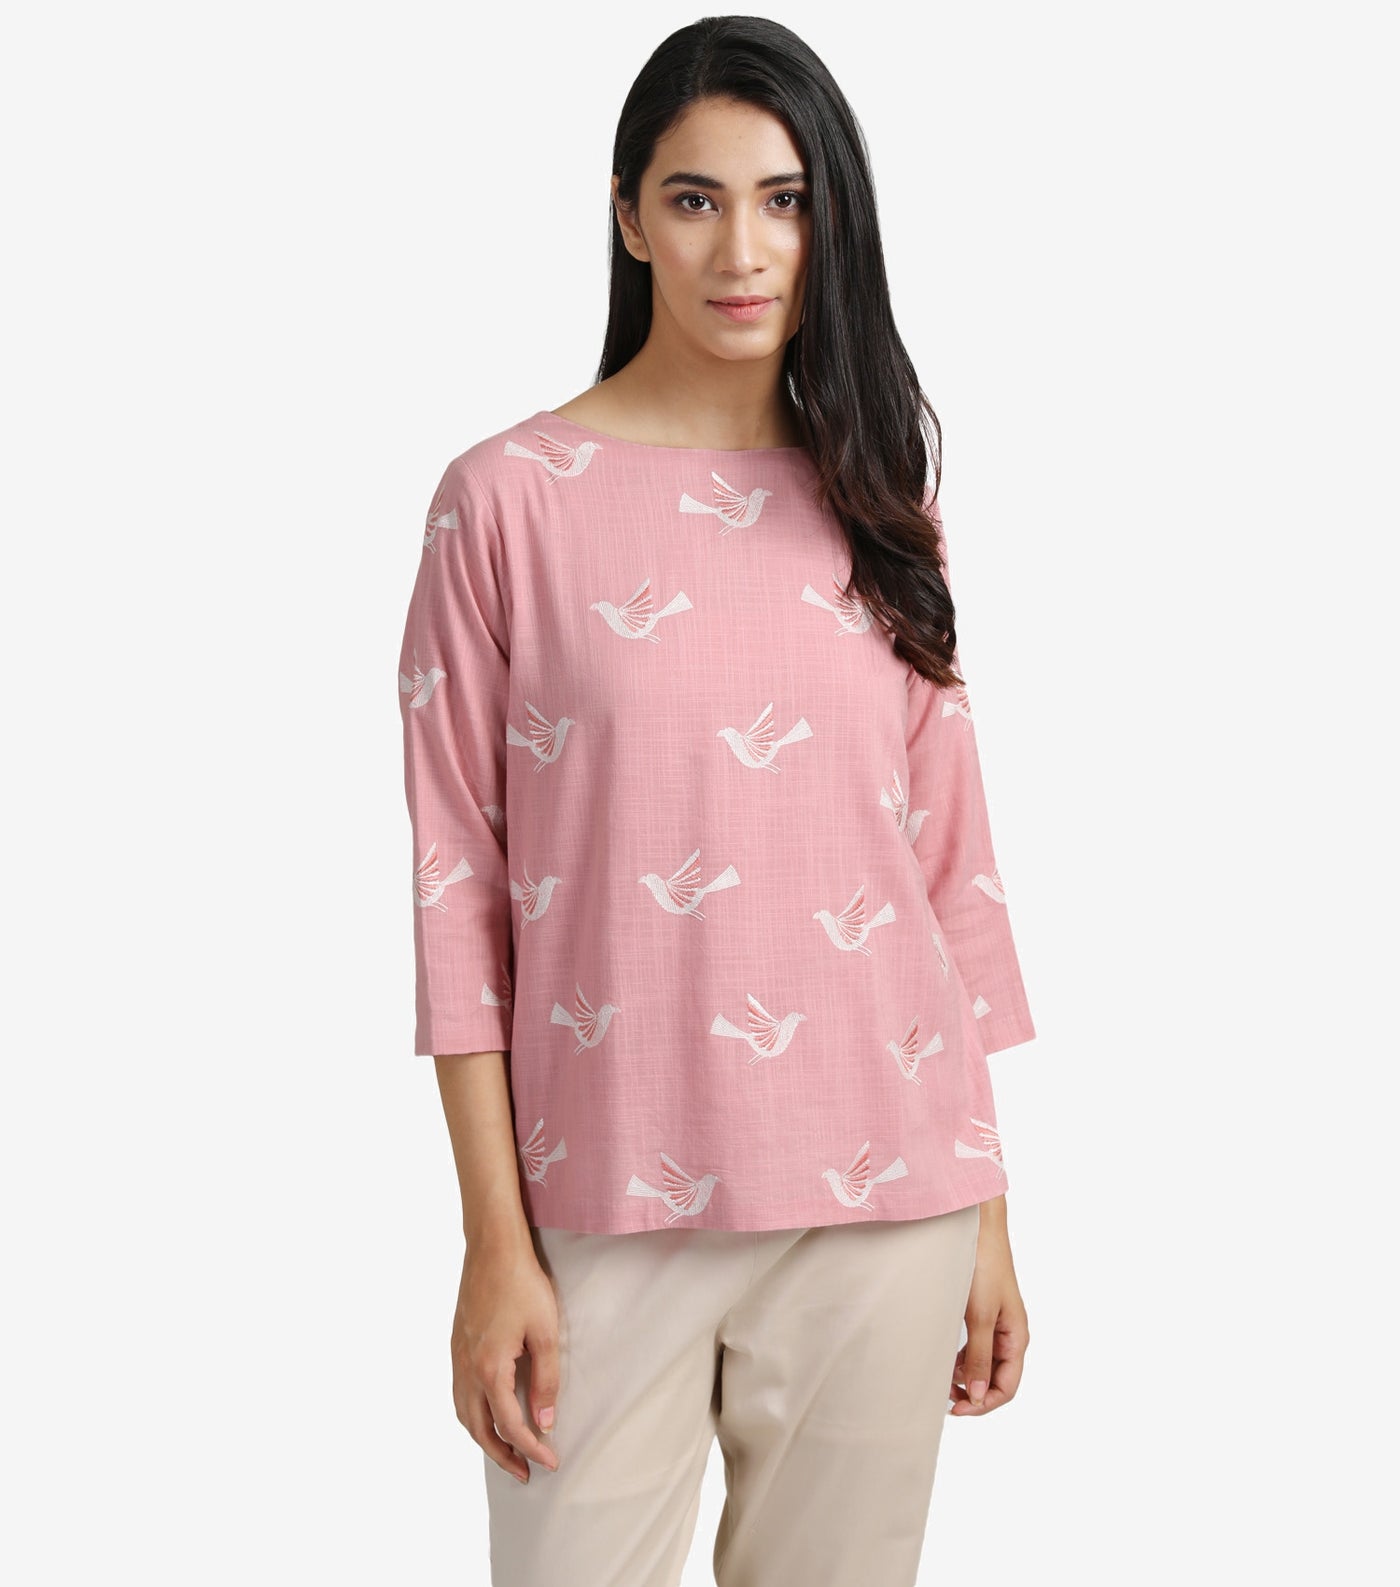 Pastel pink cotton linen top